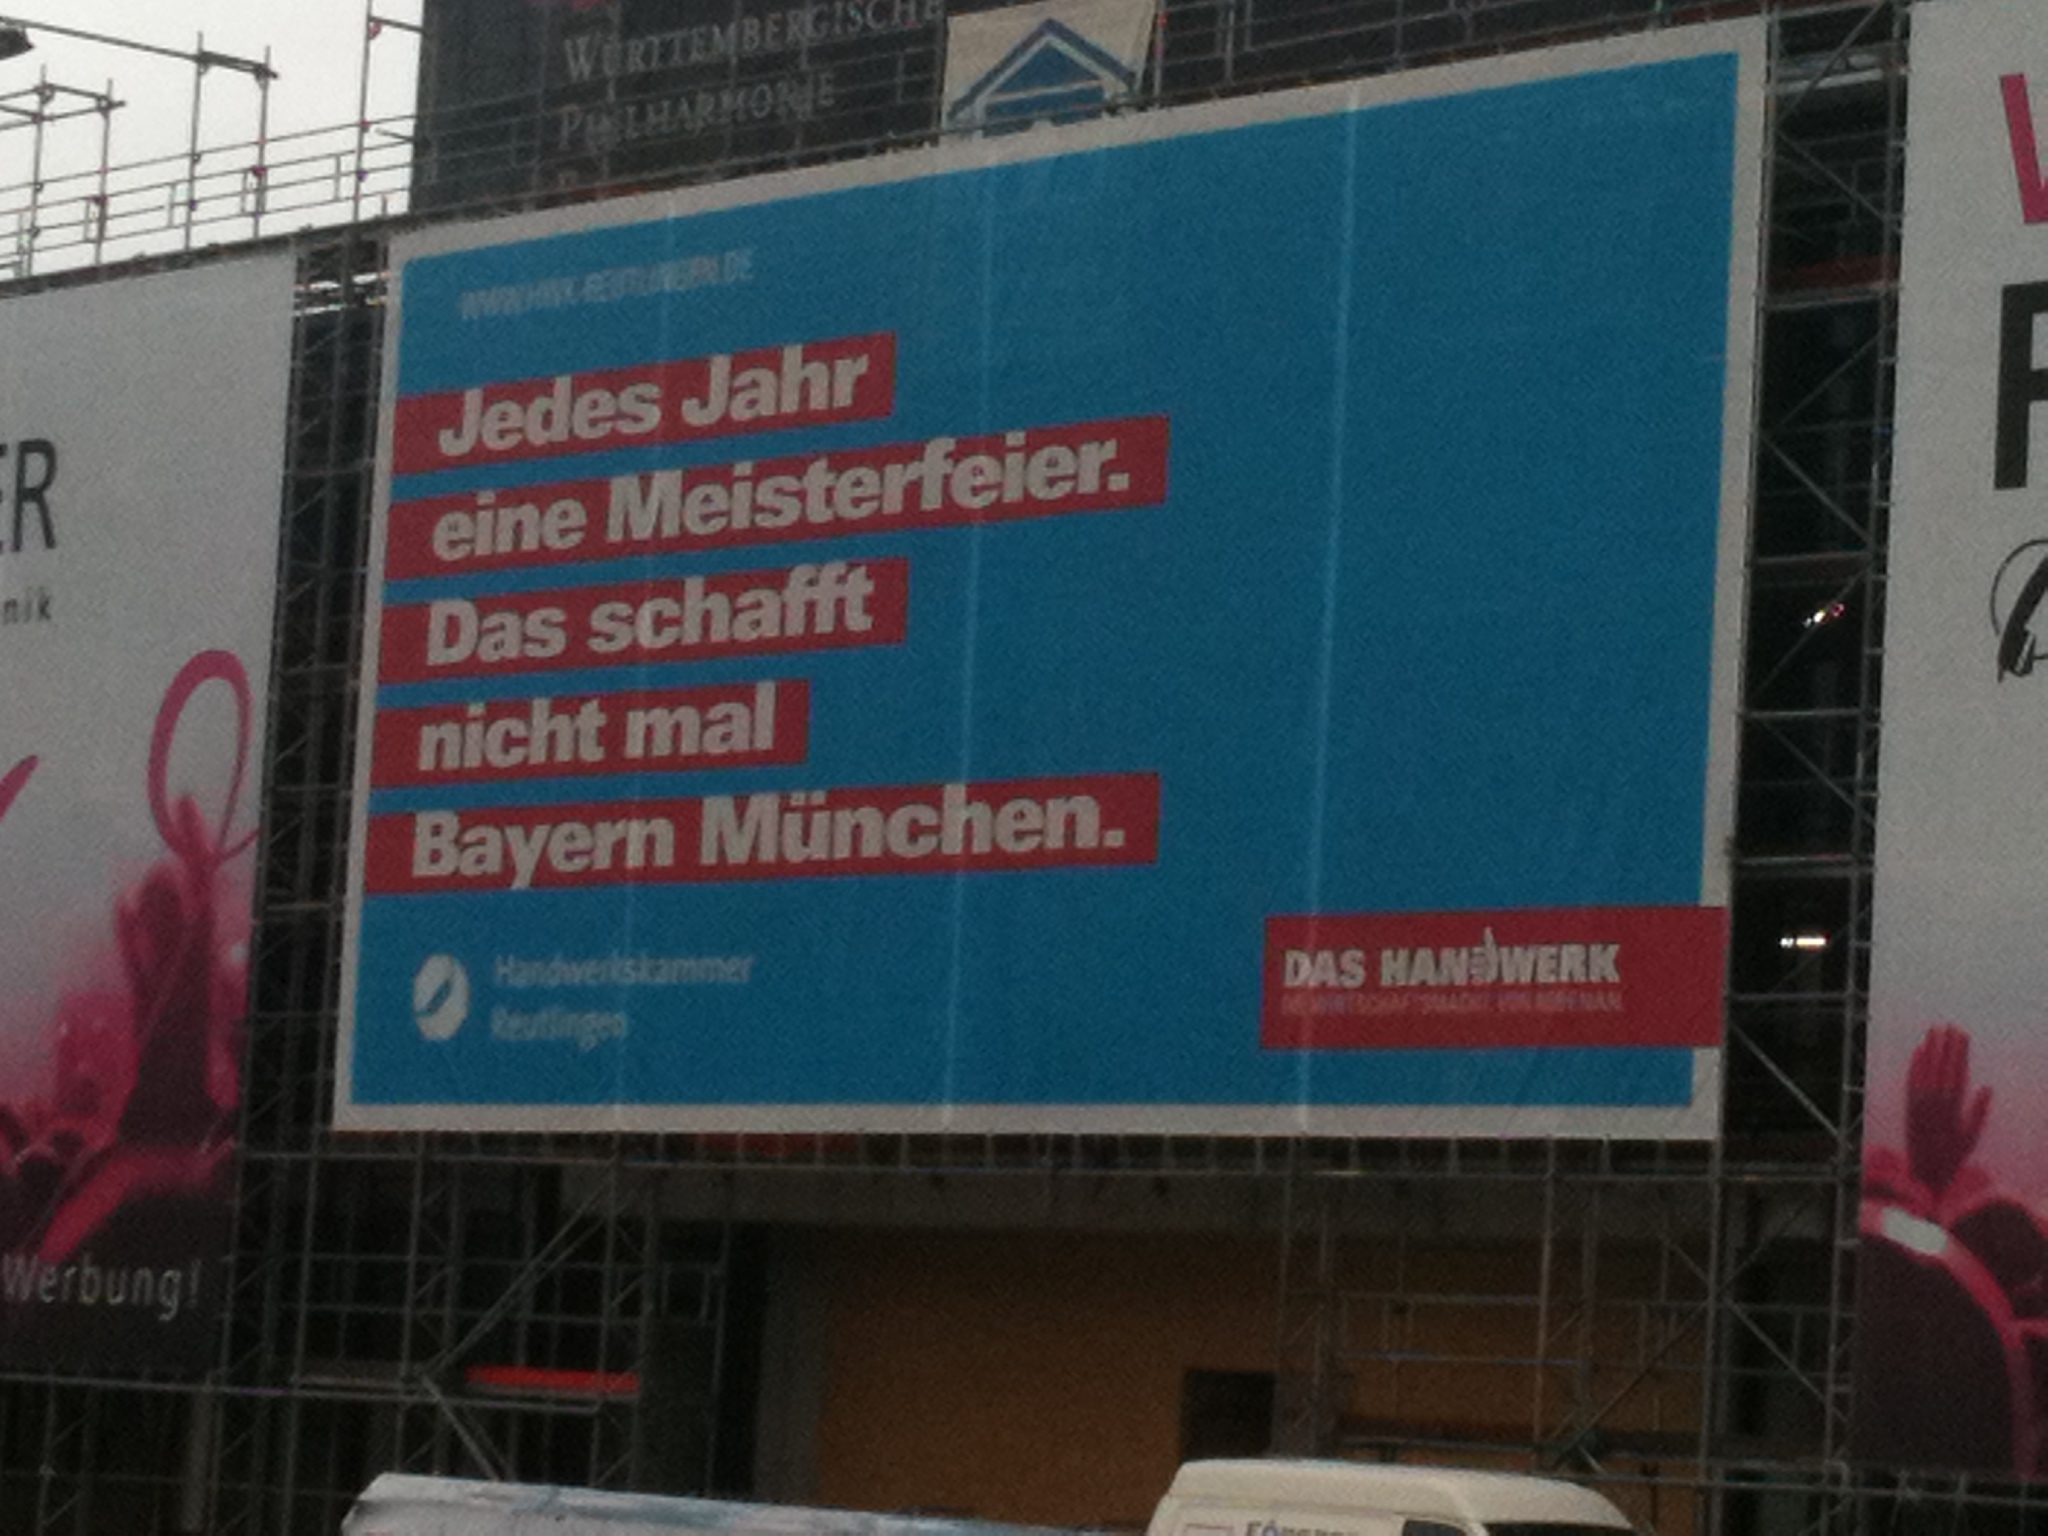 Sehr einfallsreiche Werbung an der Baustelle zur neuen Stadthalle - von der Handwerkskammer Reutlingen!